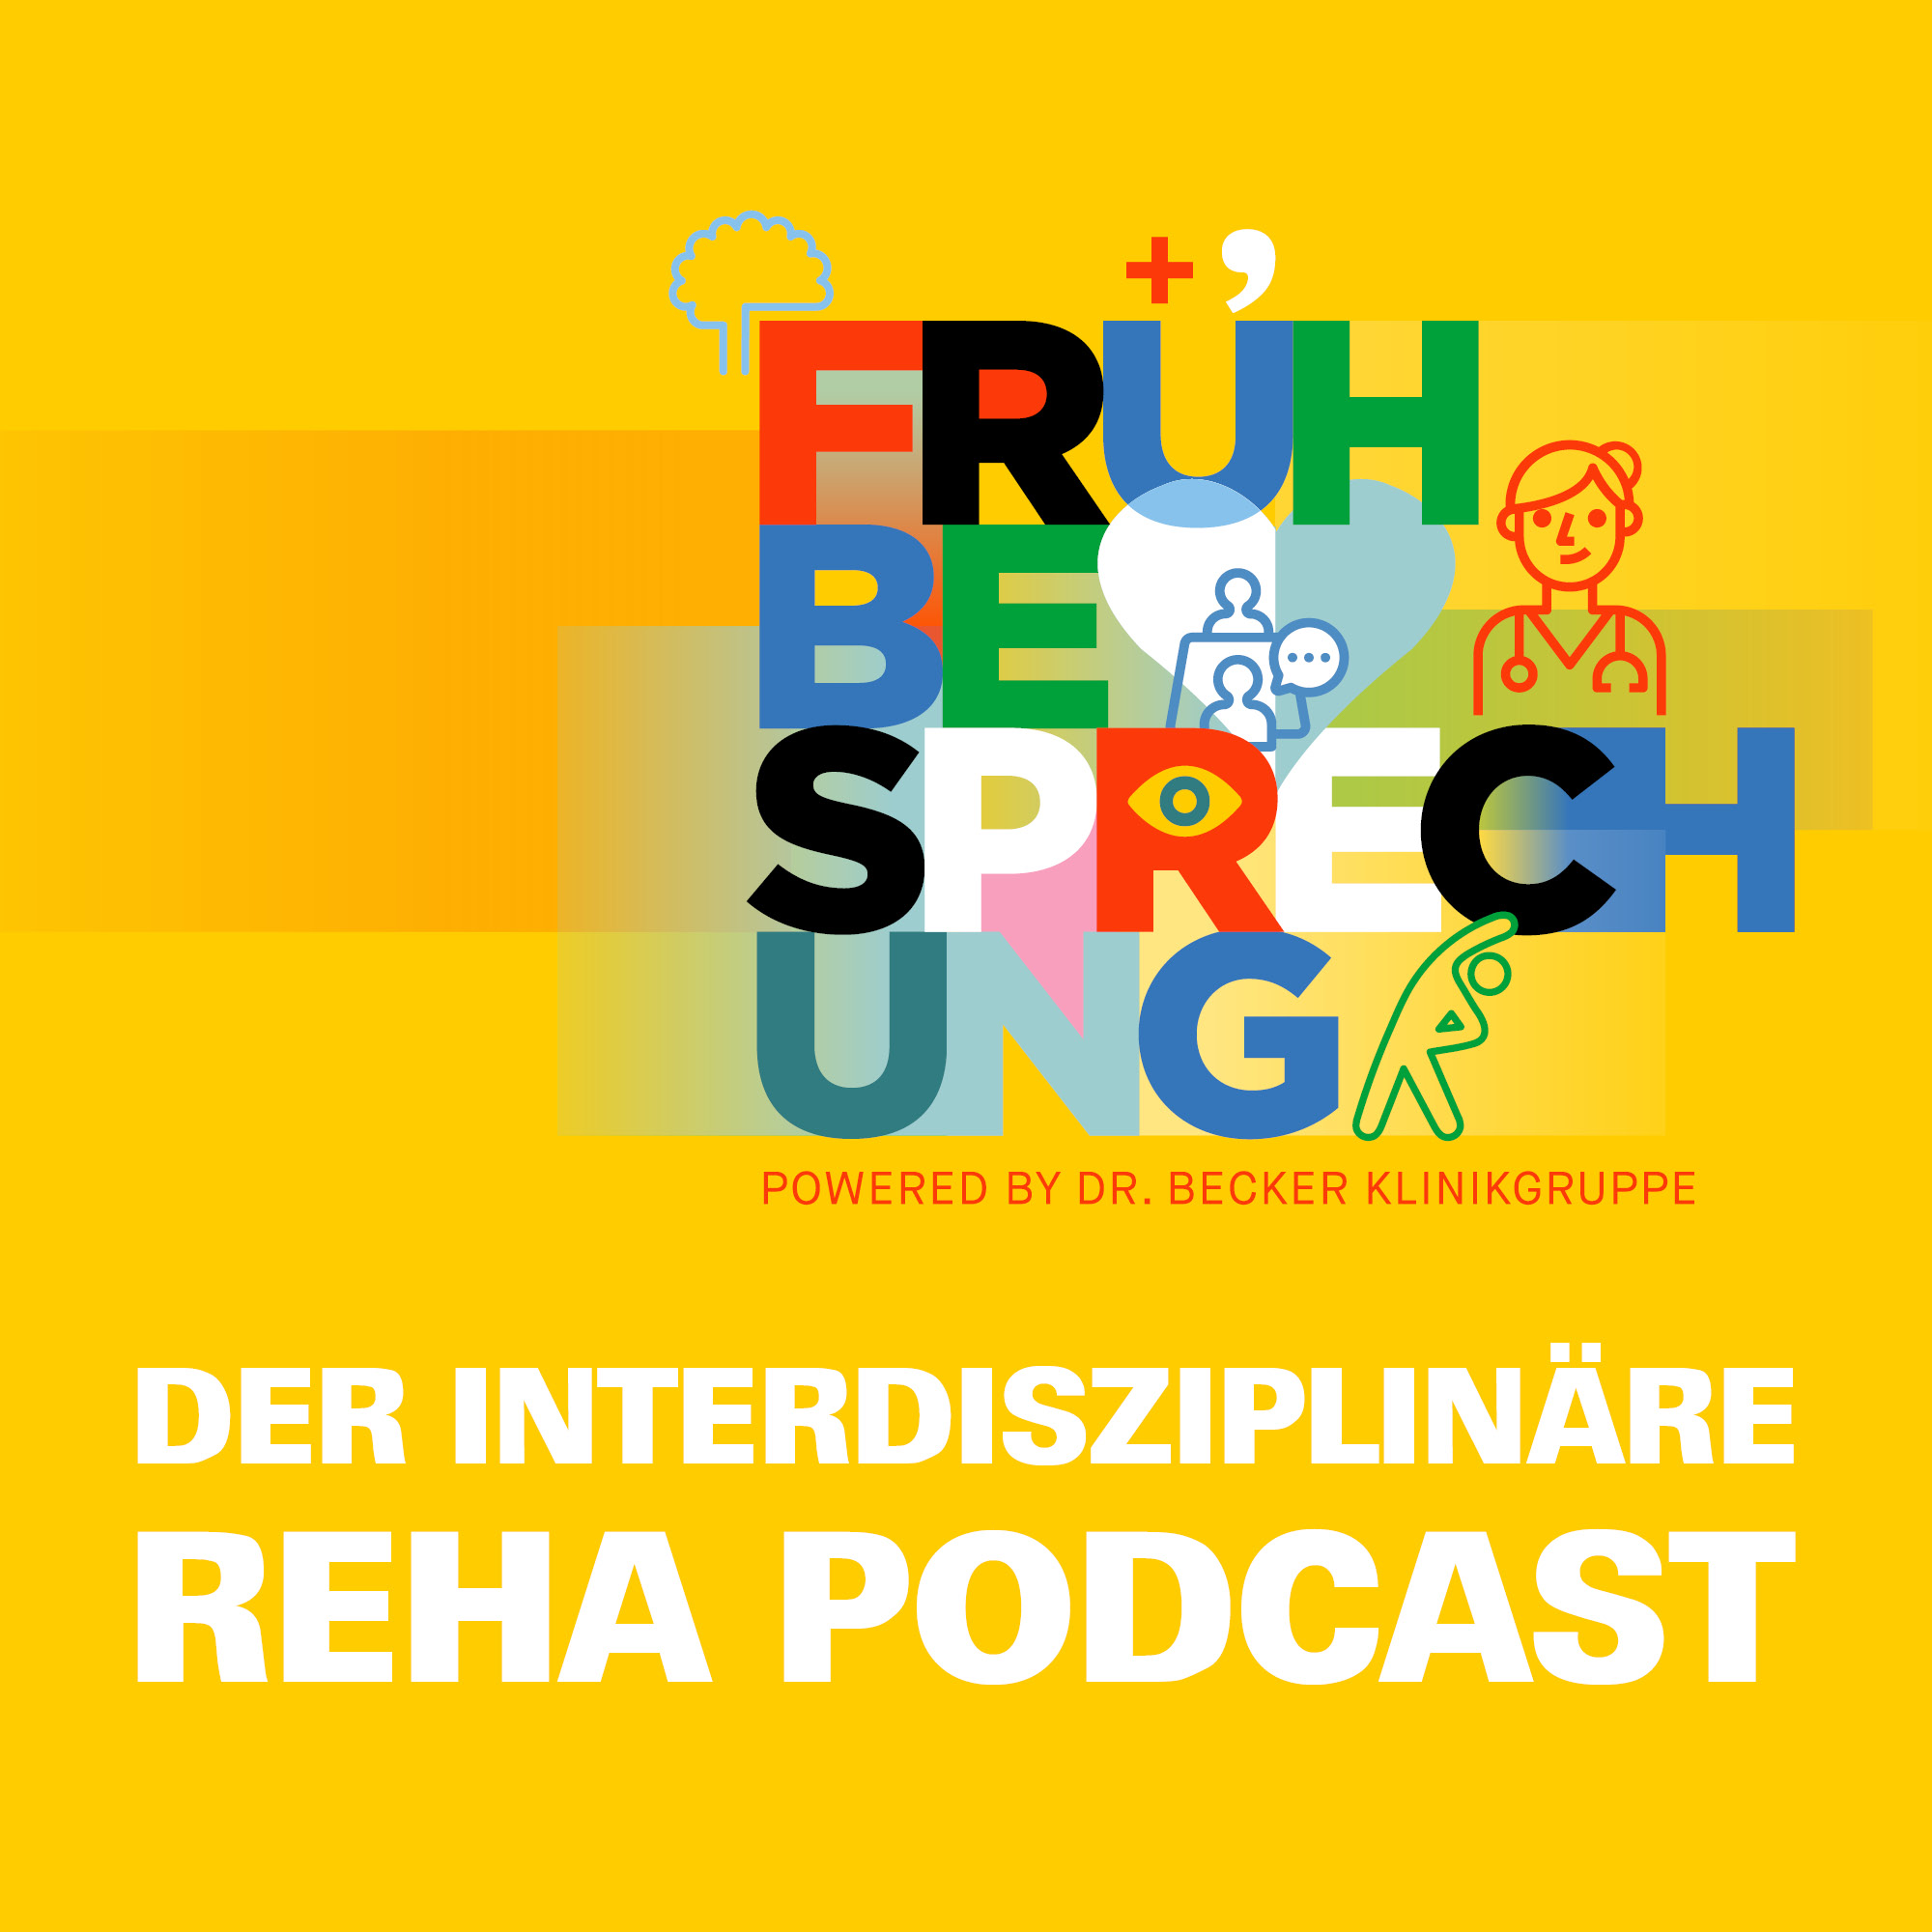 Frühbesprechung - Der interdisziplinäre Reha-Podcast